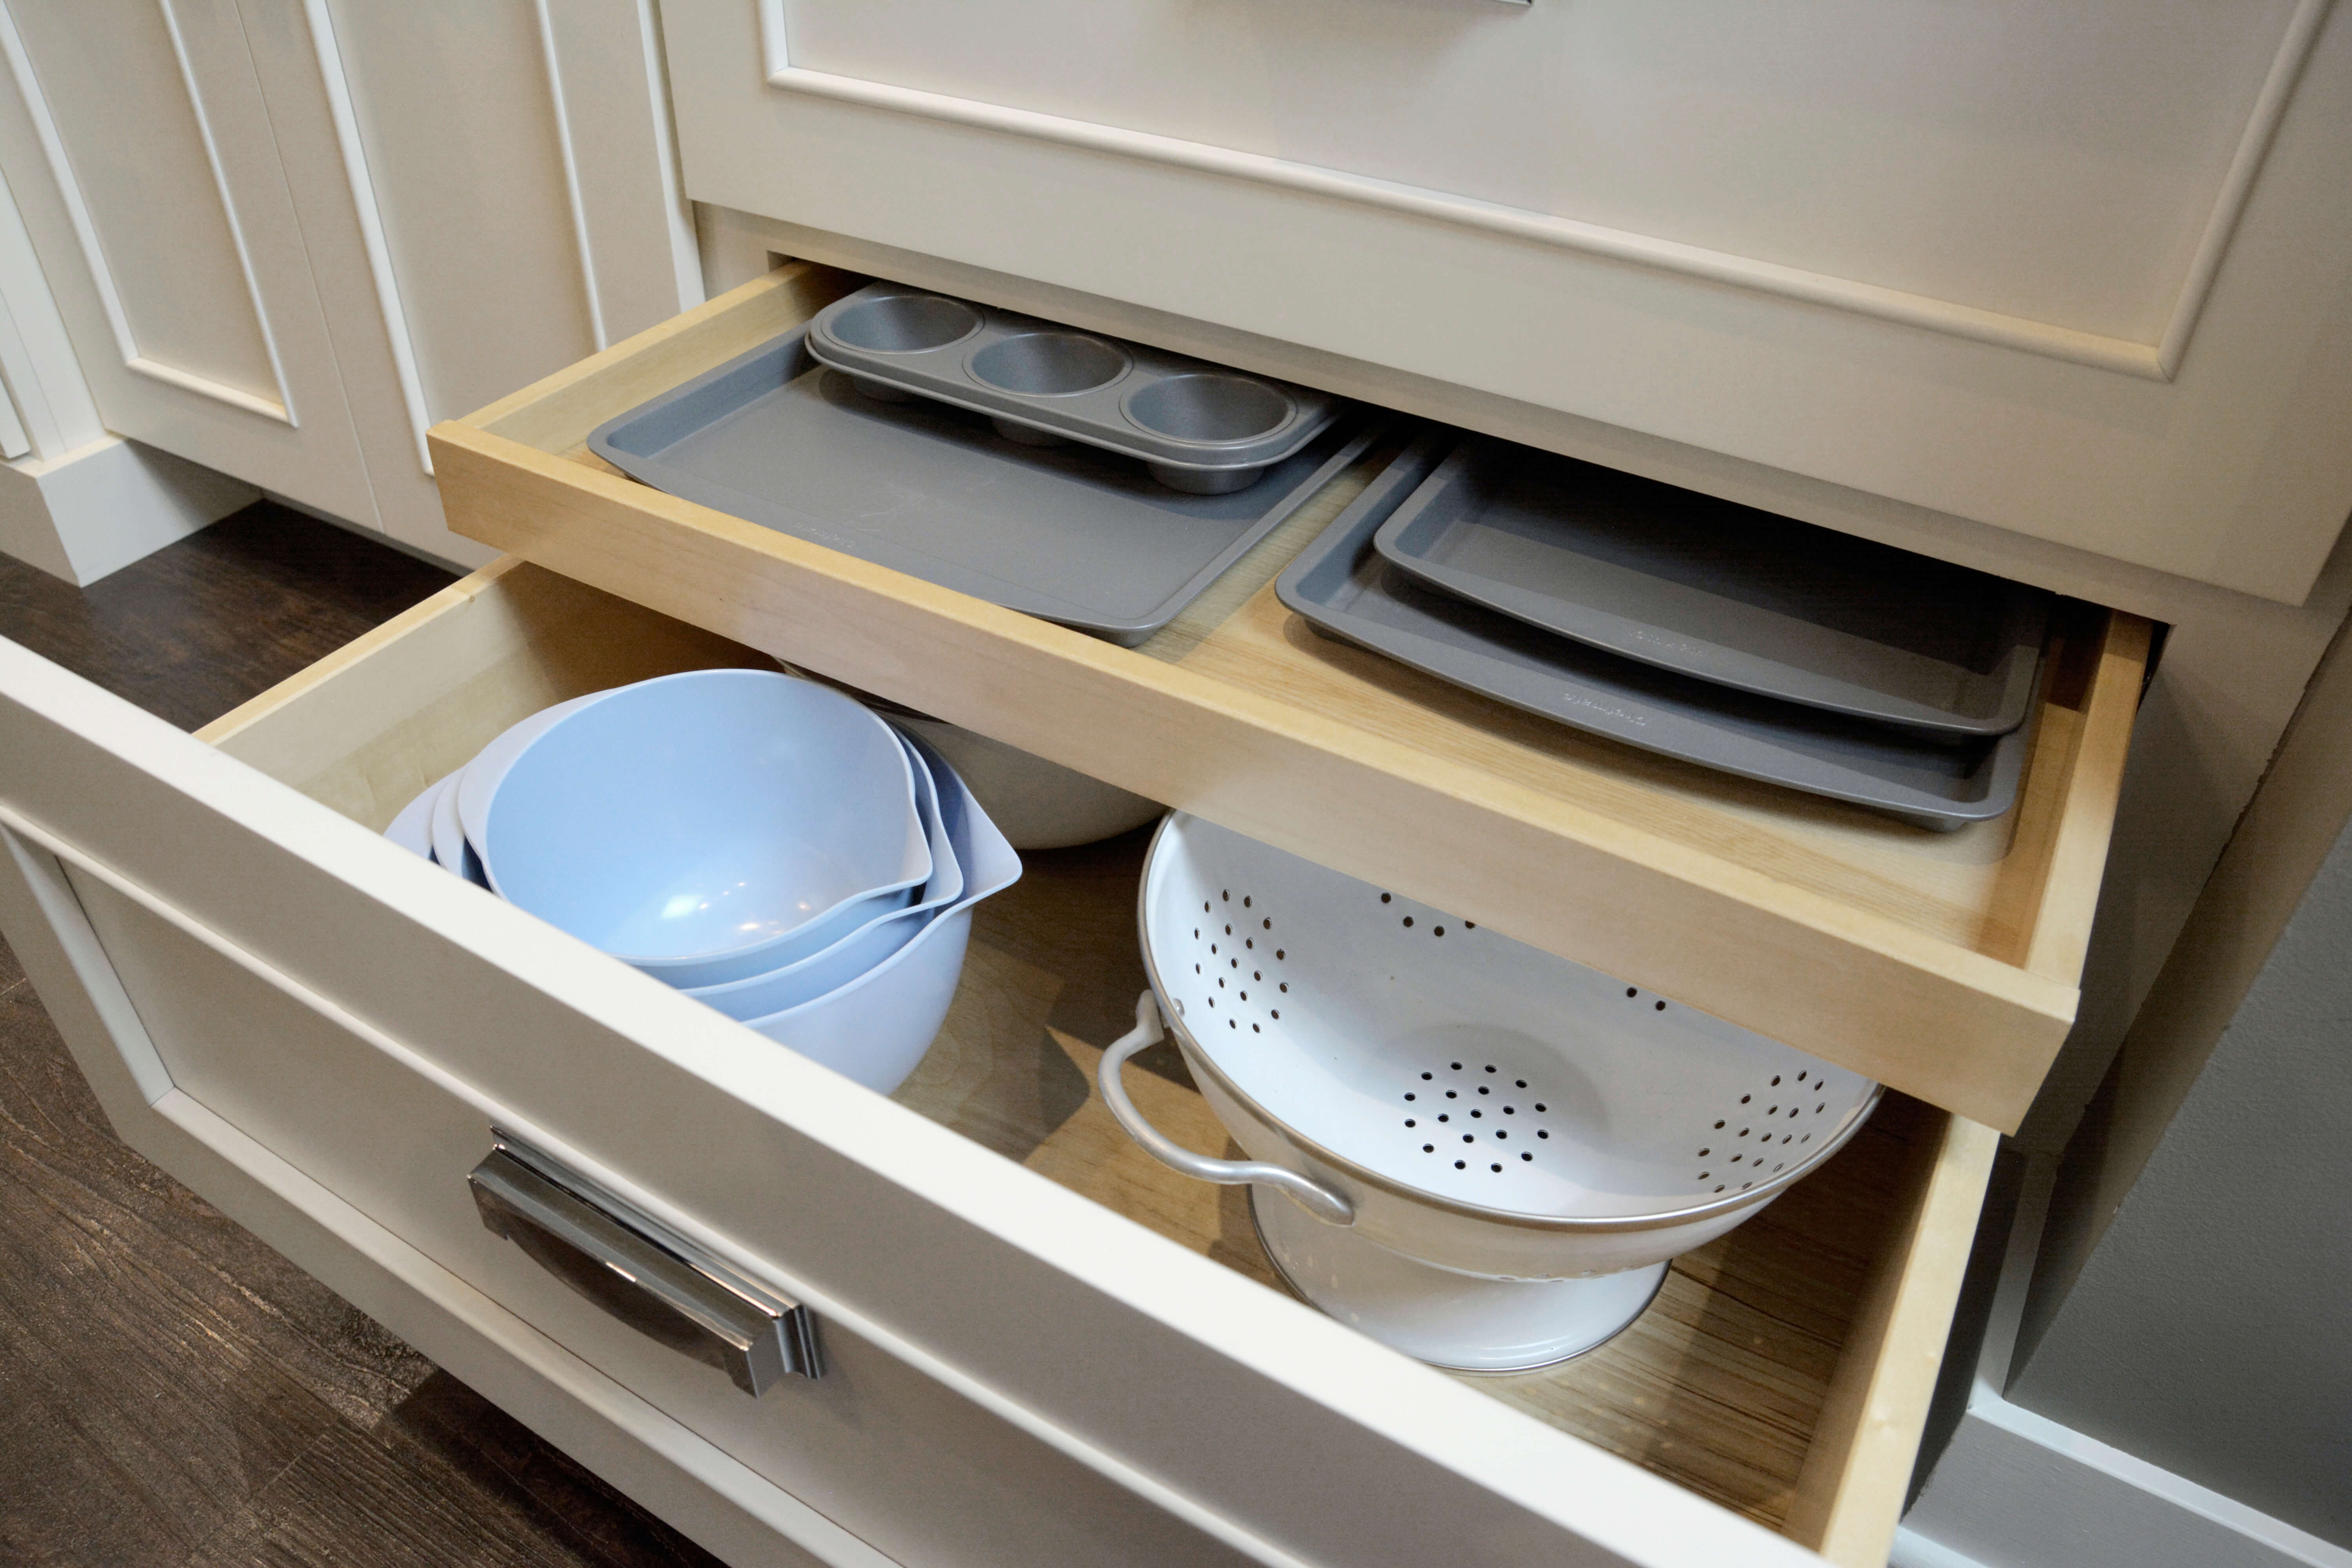 dinner plate storage in kitchen drawer  Kitchen cabinet storage, Kitchen  drawer organization, Kitchen and bath showroom